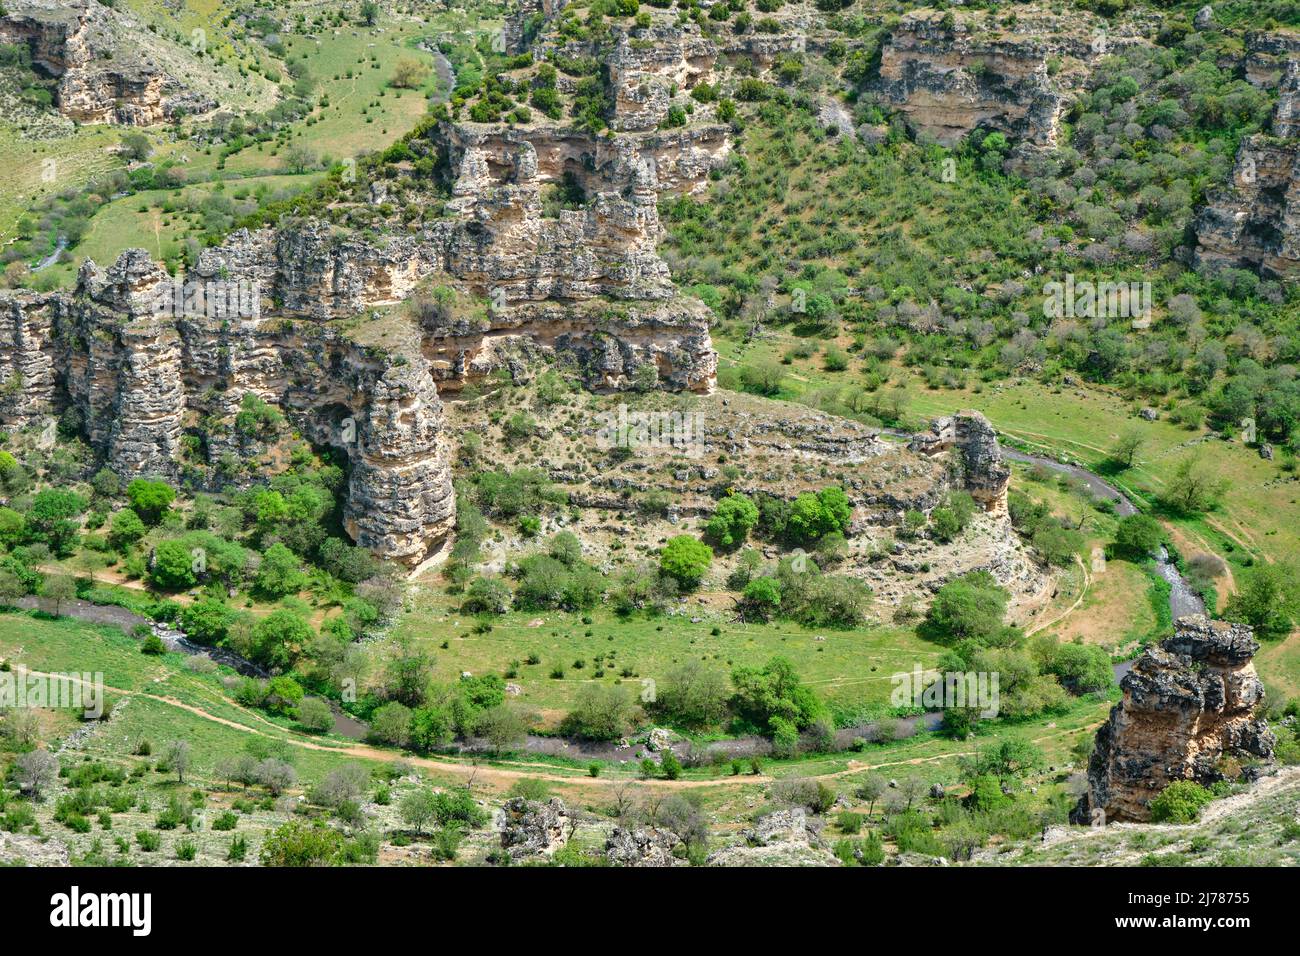 Alto angolo di vista del grande canyon Ulubey, il nome locale è Ulubey Kanyonu in Turchia in primavera. Fiume e pianta verde all'interno della formazione geologica di roccia Foto Stock